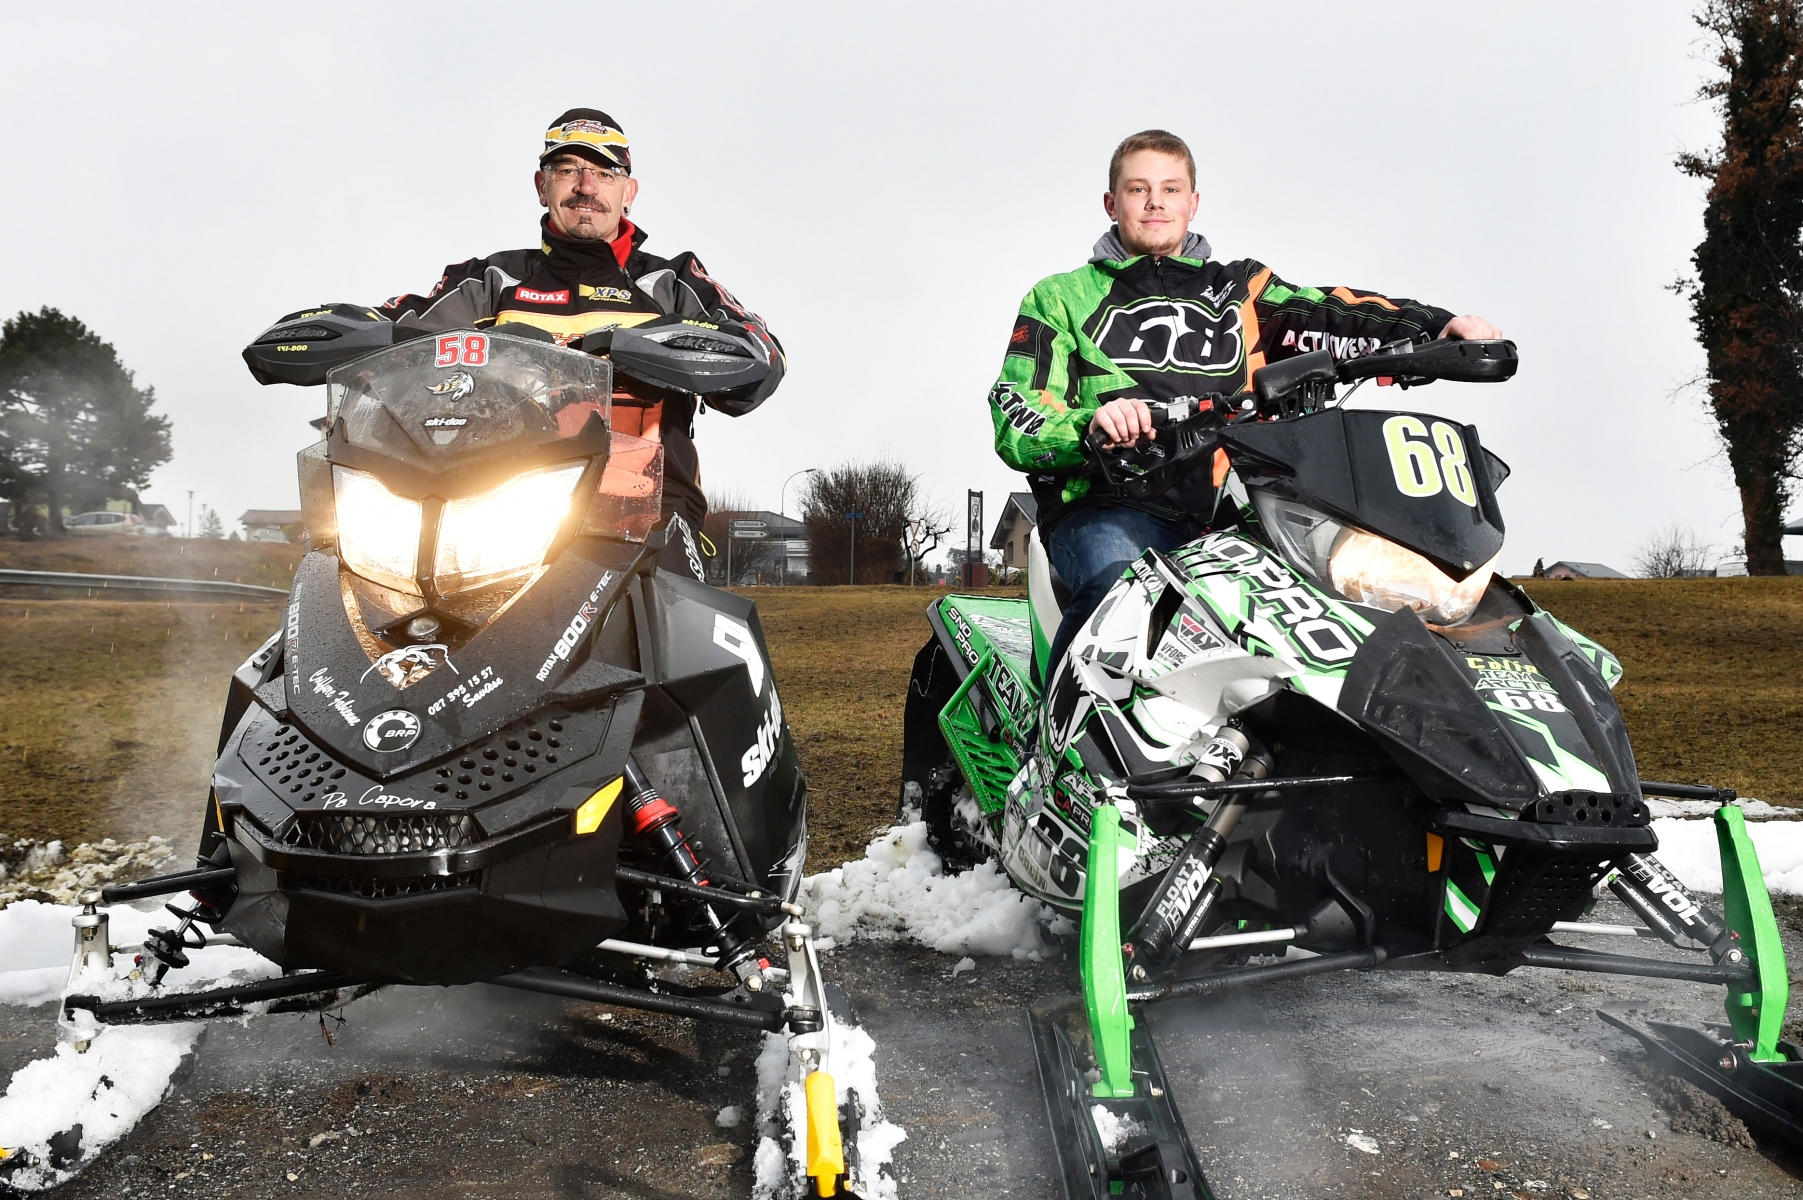 Savièse - 8 février 2017 - Portrait deJacky Liand et Colin Dubuis, pilotes de Snowcross, qui font les championnats suisses de Snowcross. (Le Nouvelliste/ Héloïse MARET)